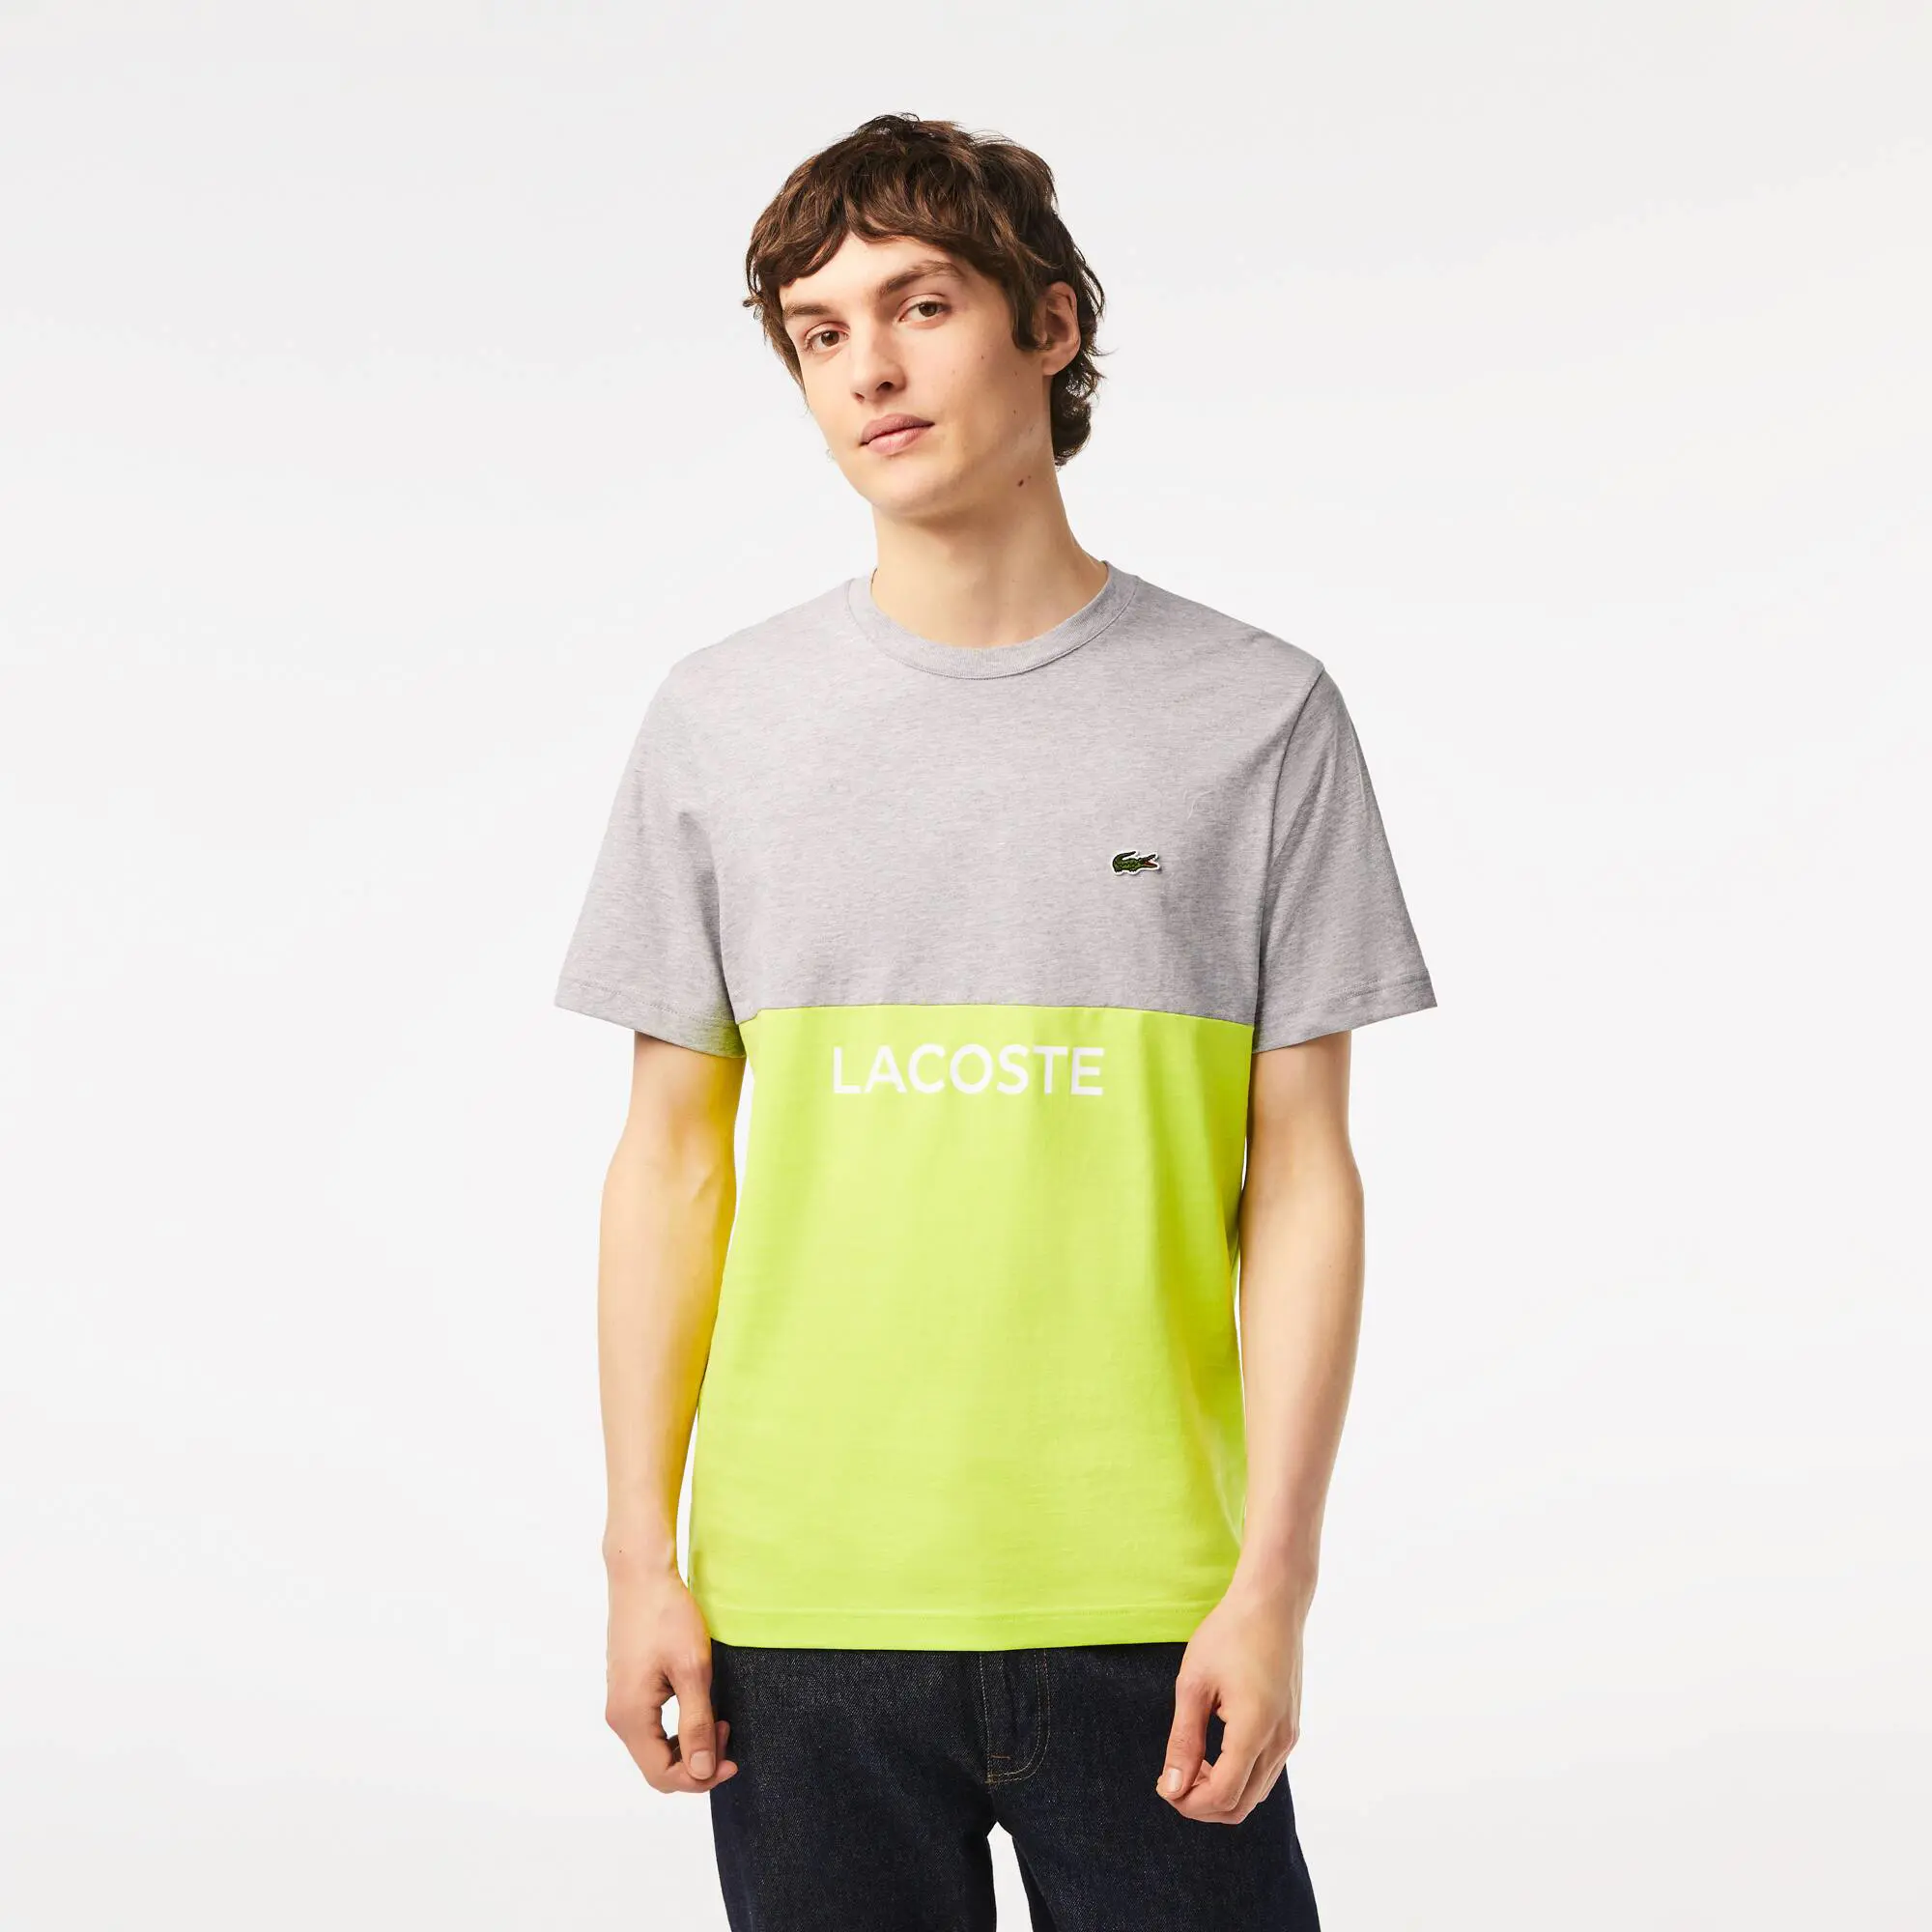 Lacoste T-shirt homme Lacoste regular fit color-block en jersey de coton. 1